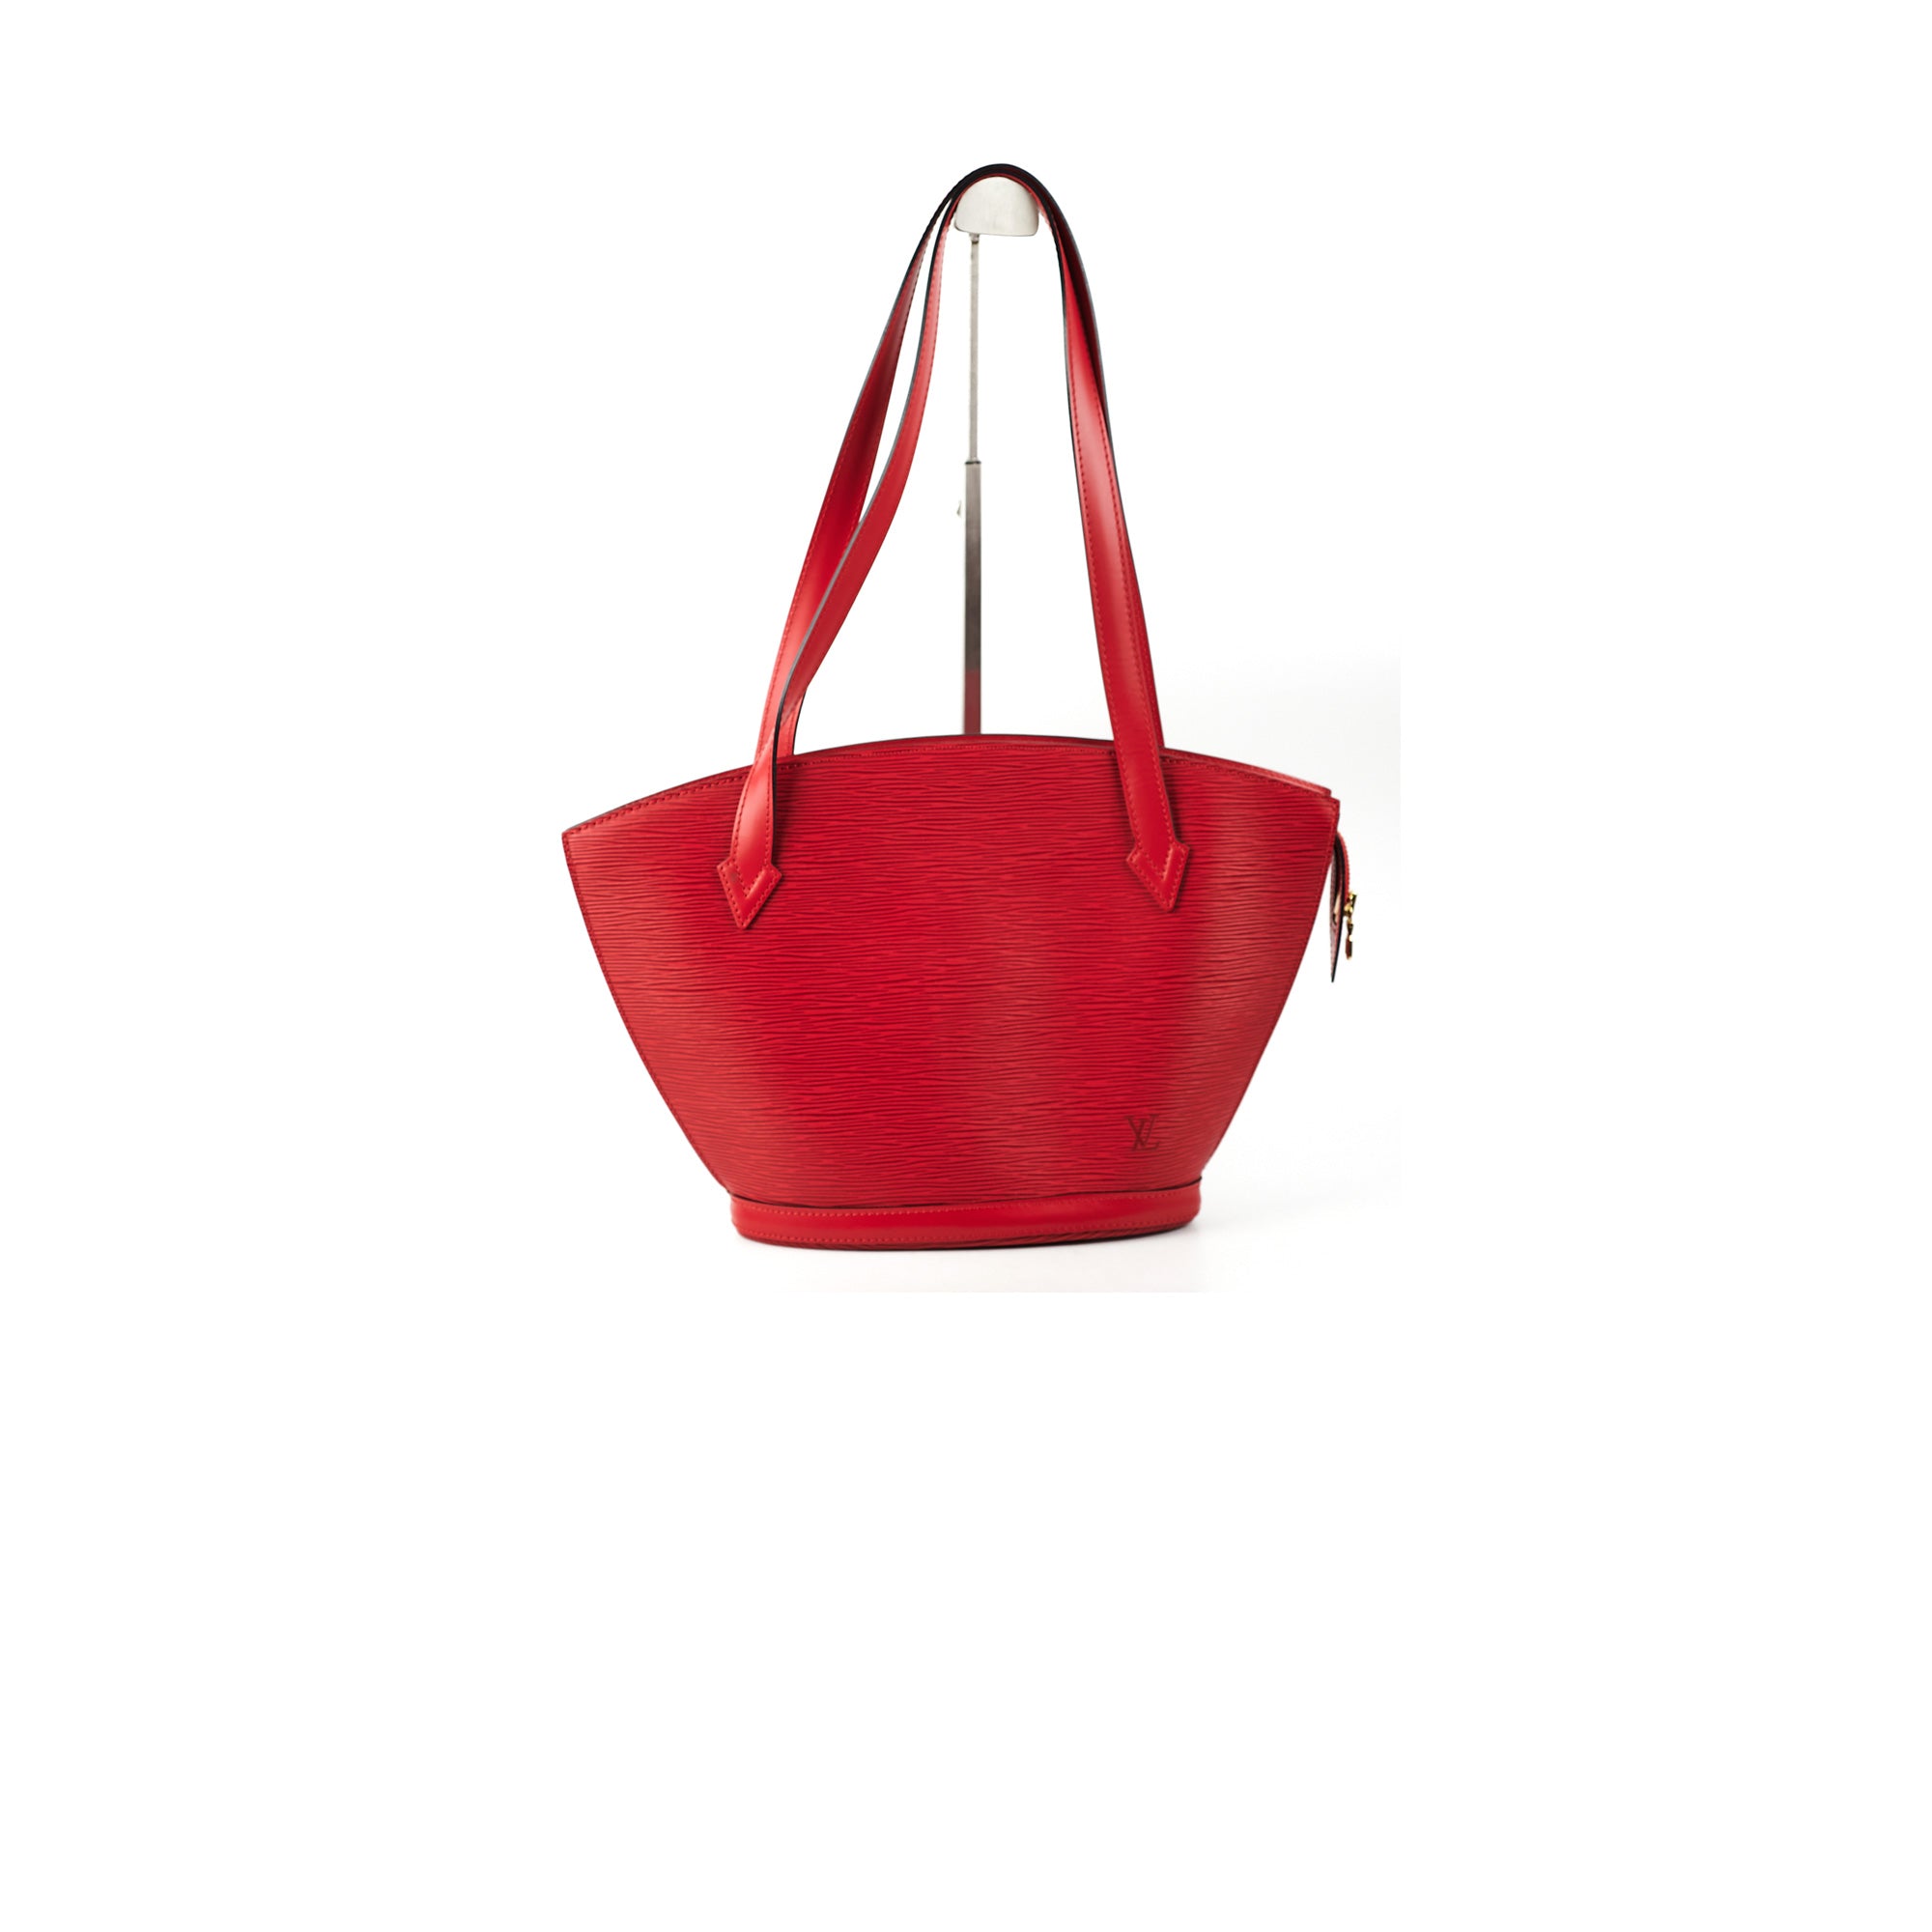 Louis Vuitton Epi Bag Red - THE PURSE AFFAIR